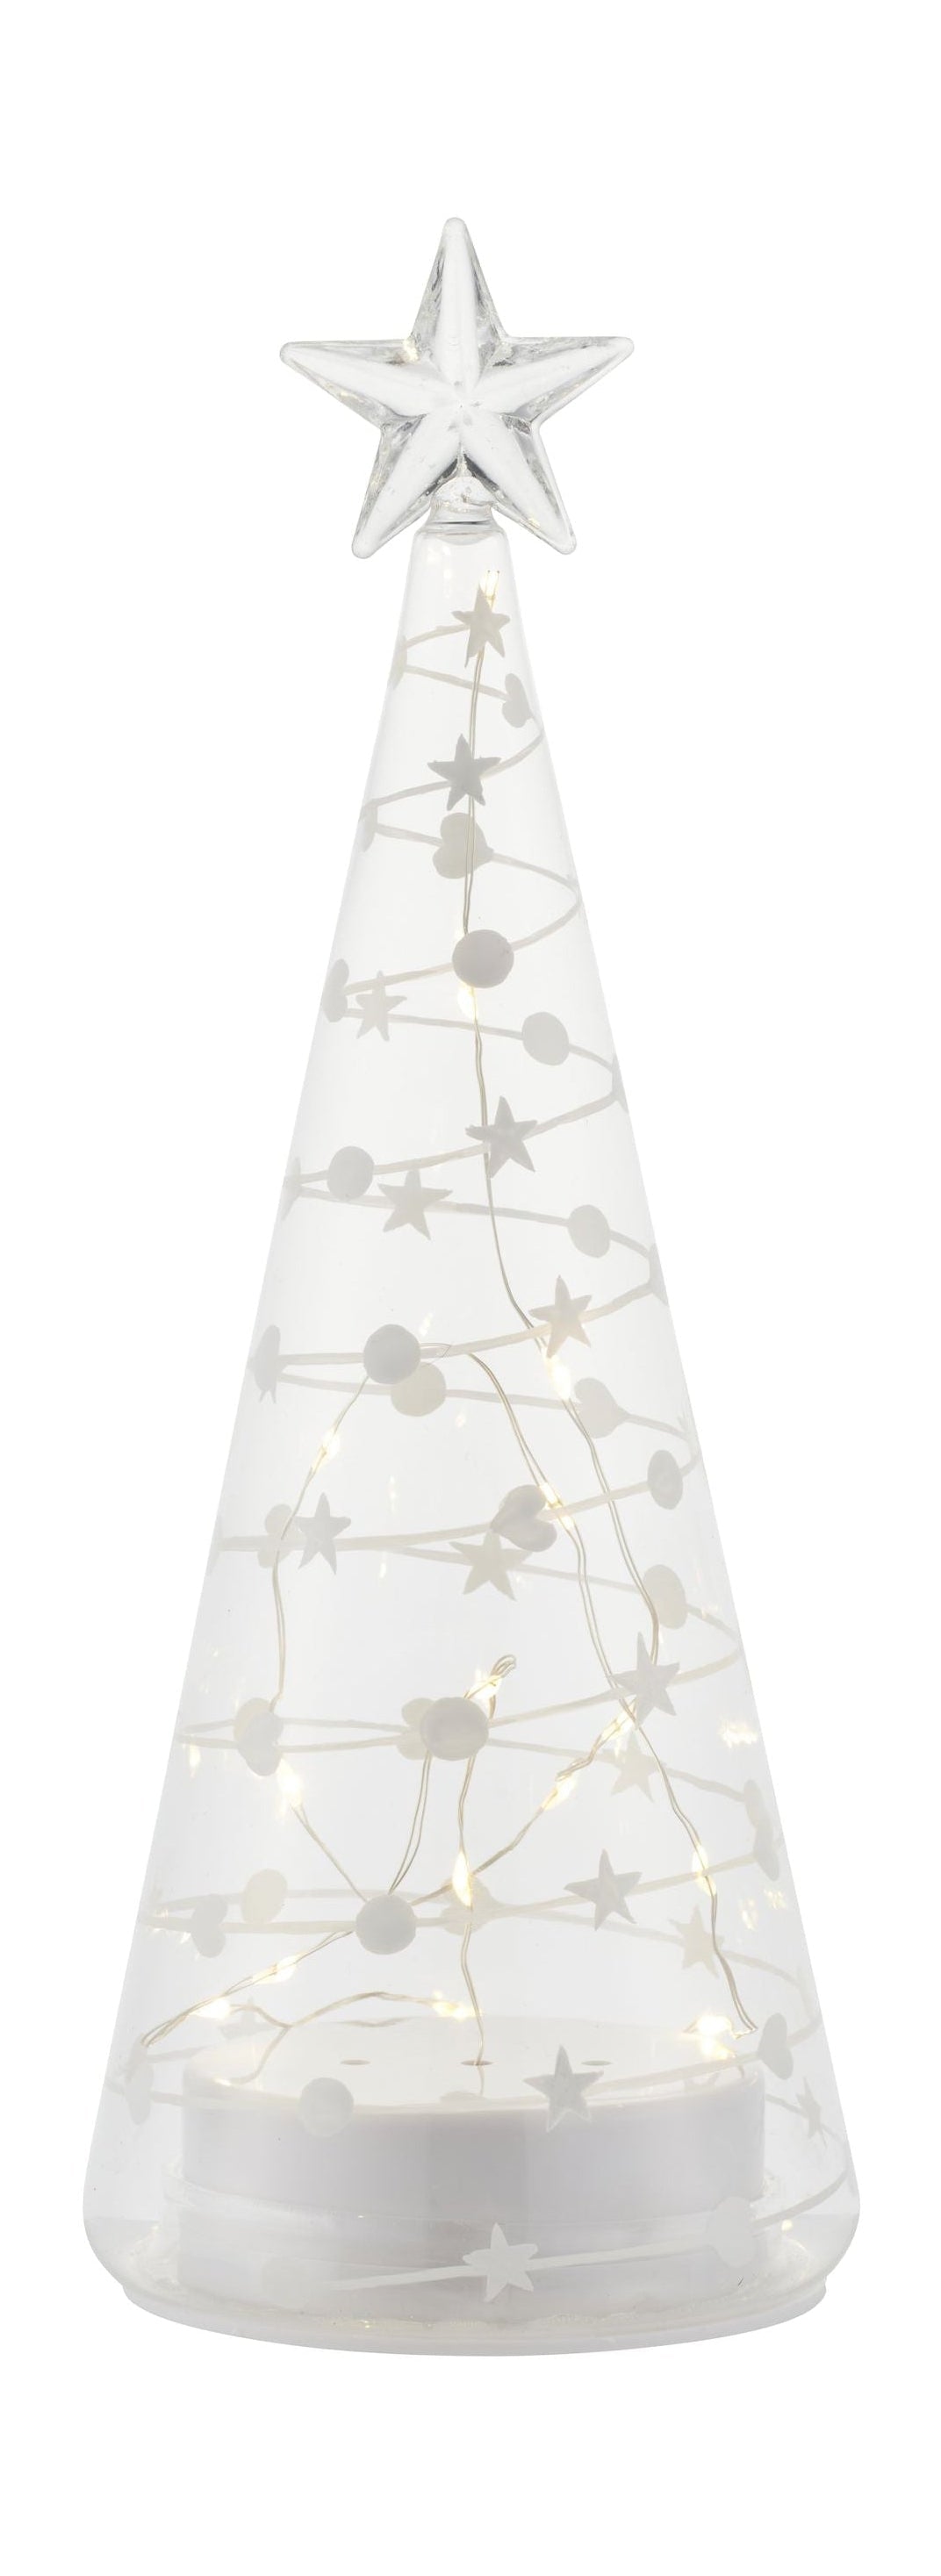 Sirius süßer Weihnachtsbaum, H26 cm, weiß/klar